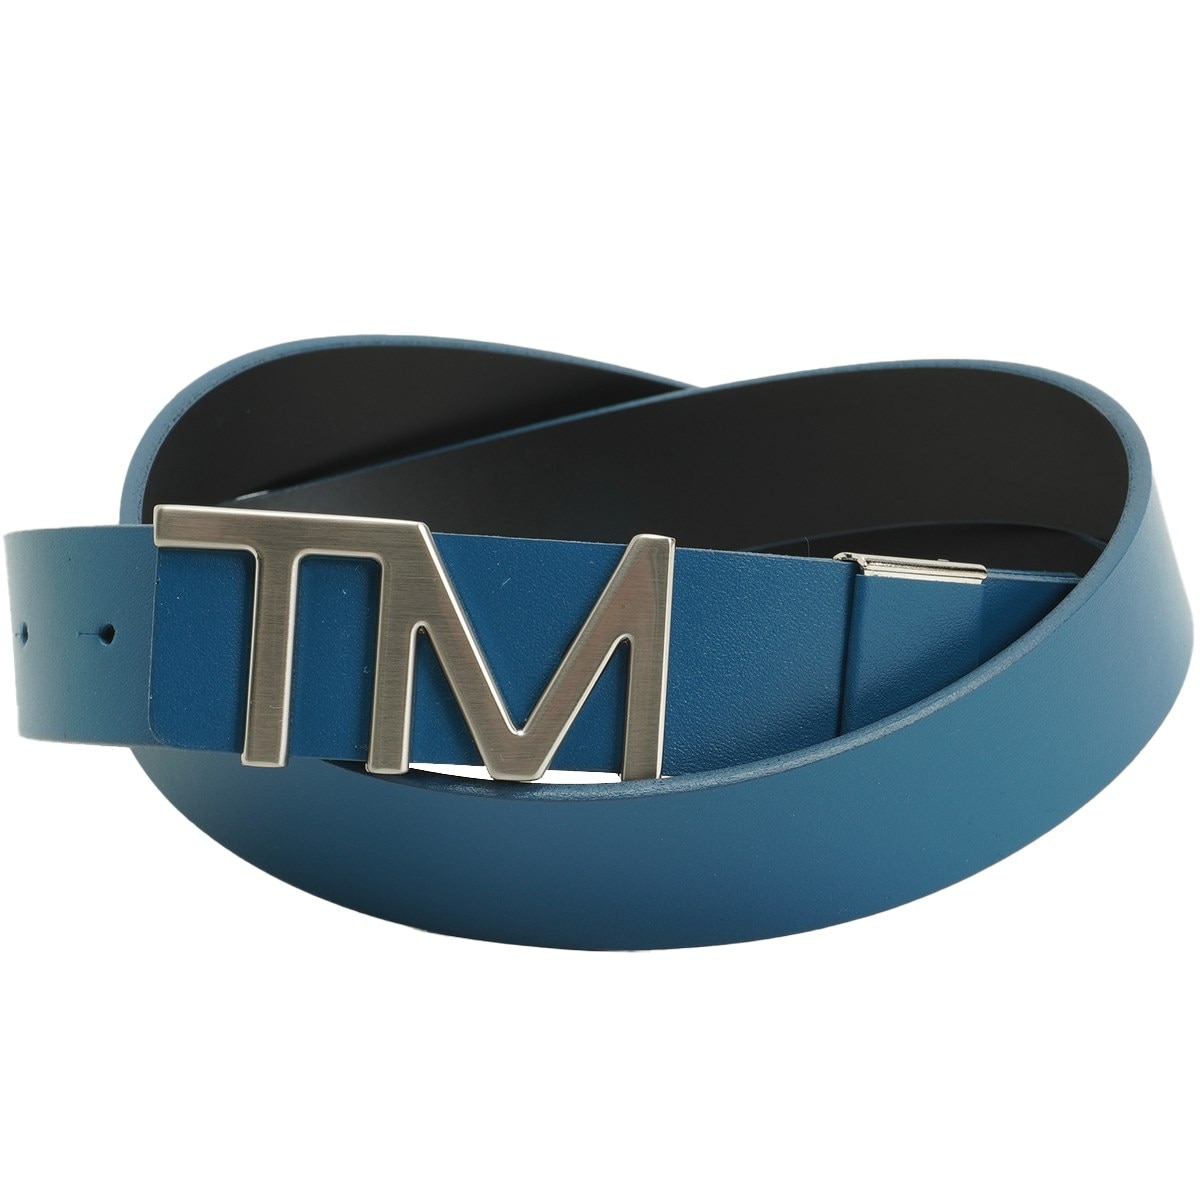 TM バックルベルト(ベルト)|Taylor Made(テーラーメイド) TJ052の通販